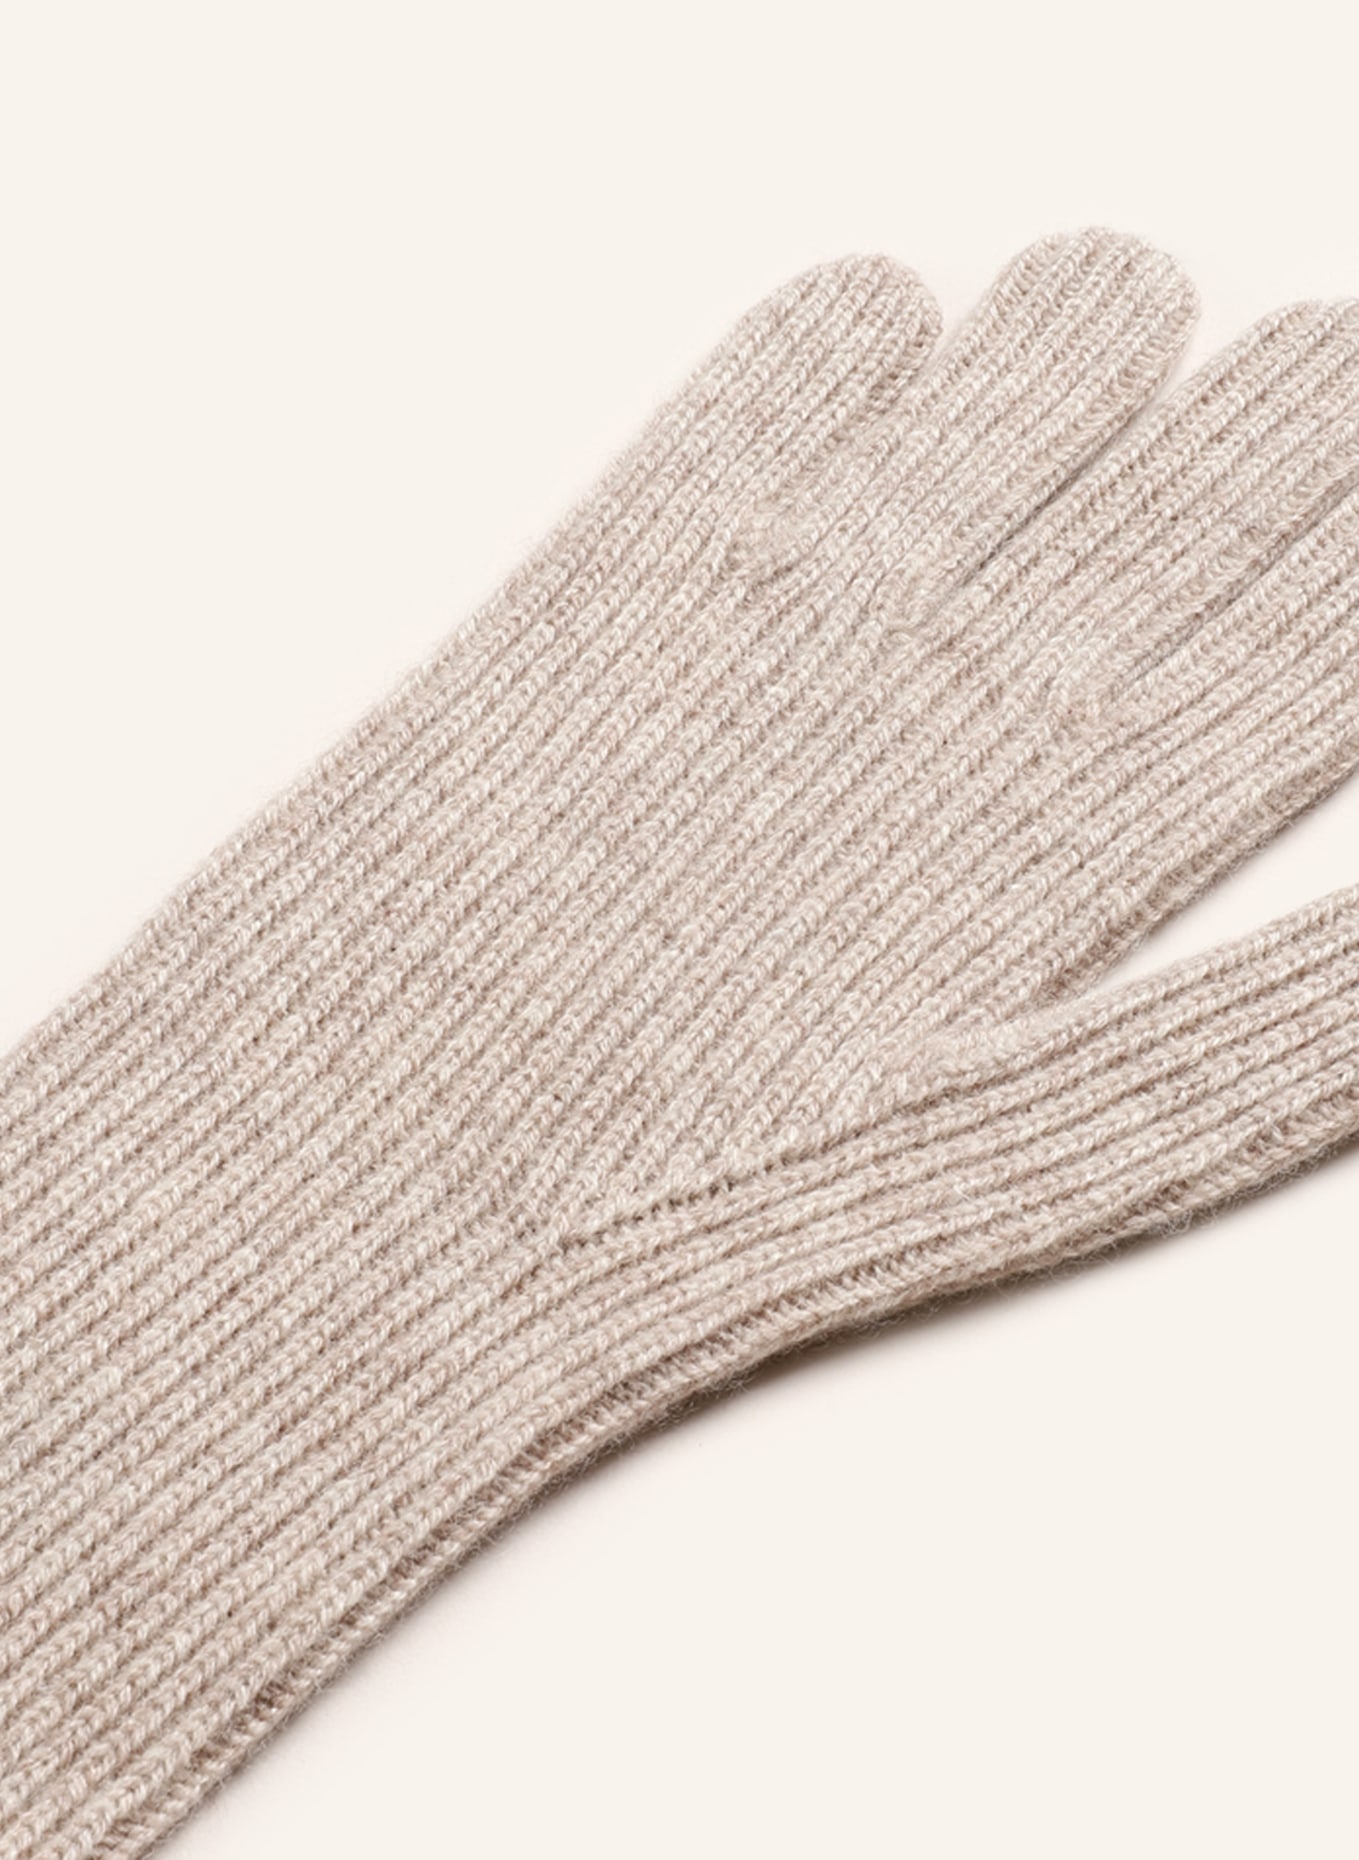 Delicatelove Gloves made of cashmere, Color: BEIGE (Image 2)